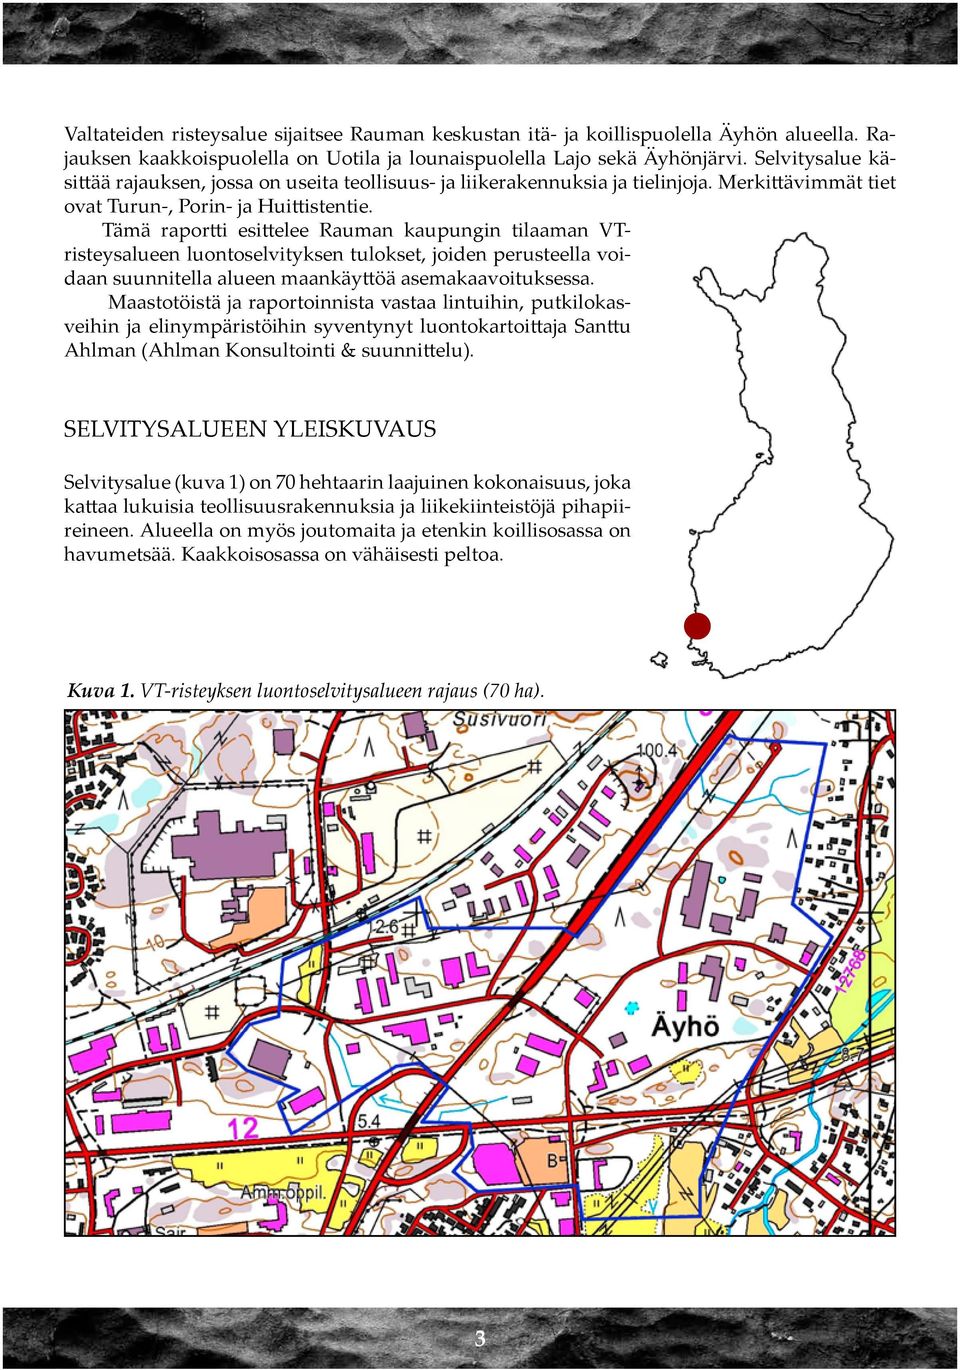 Tämä raportti esittelee Rauman kaupungin tilaaman VTristeysalueen luontoselvityksen tulokset, joiden perusteella voidaan suunnitella alueen maankäyttöä asemakaavoituksessa.